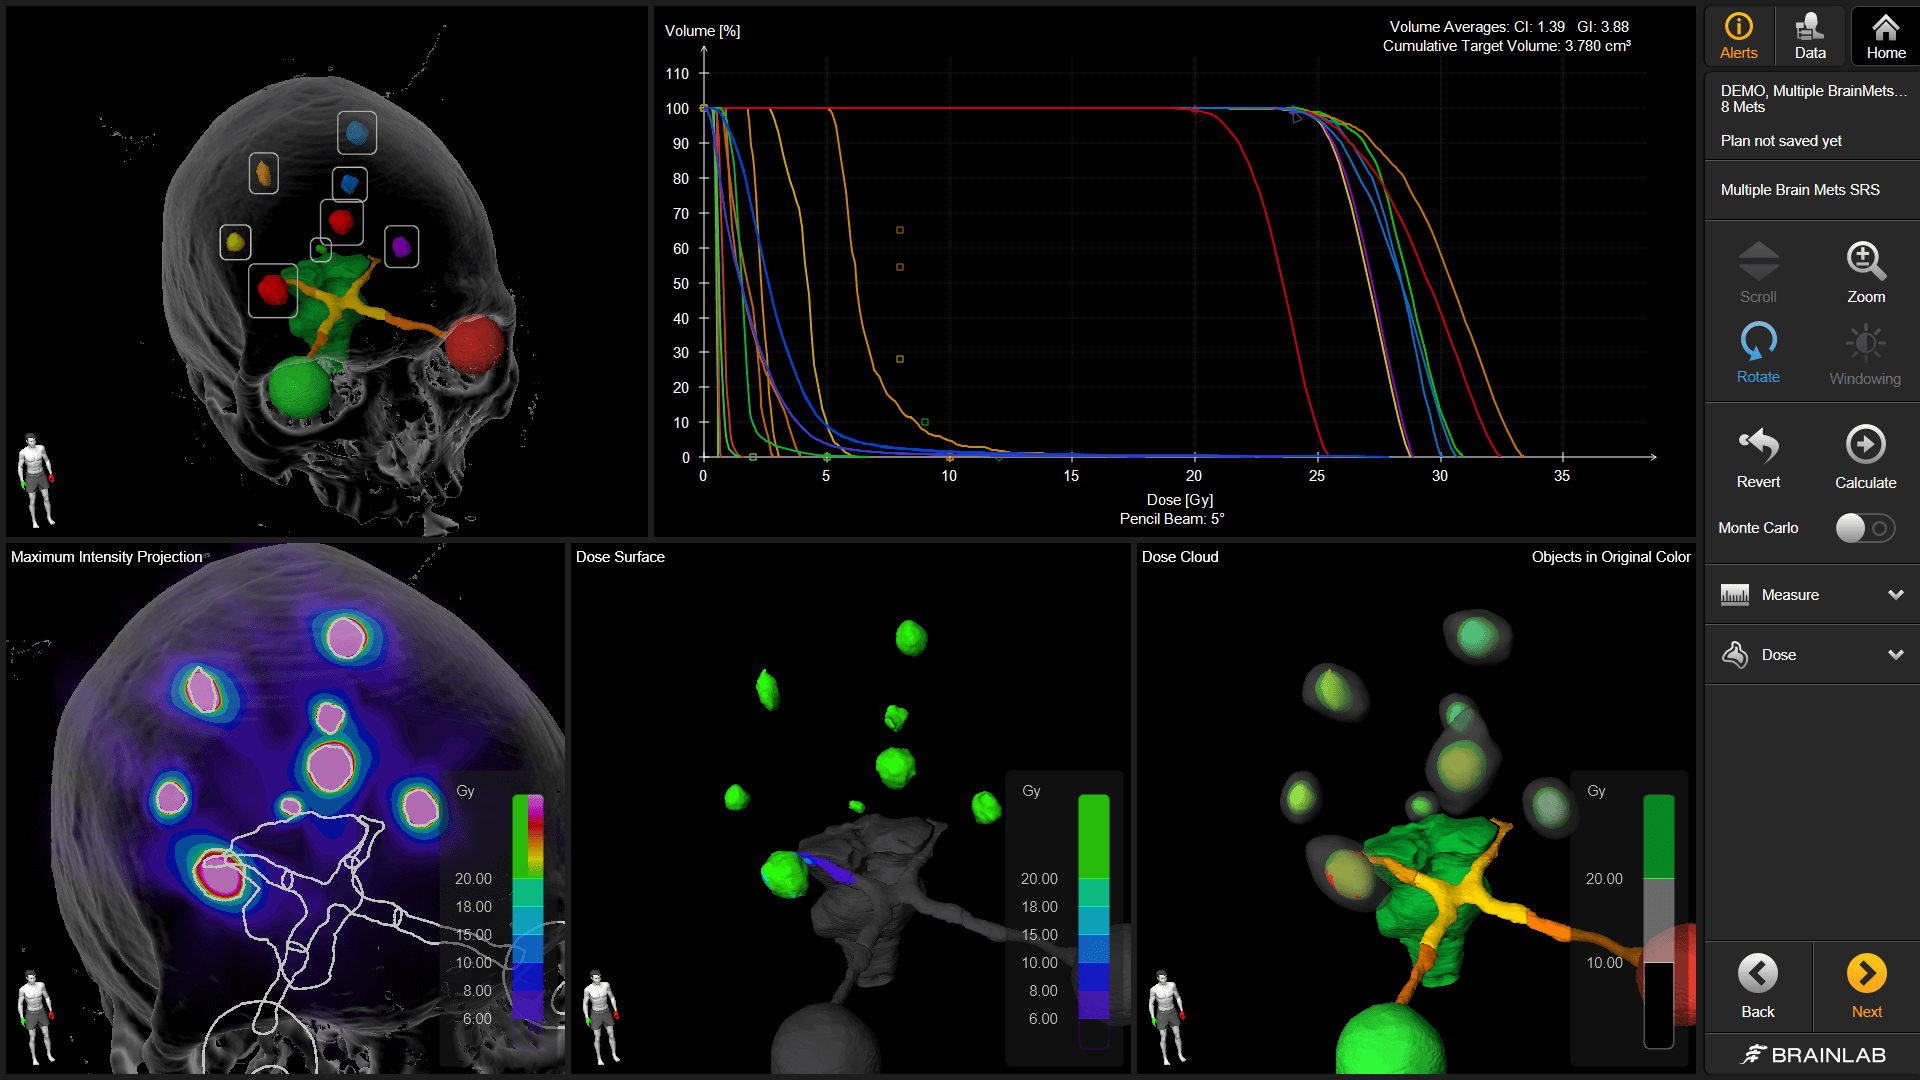 Captura de tela do software Brainlab Elements demonstrando diversas visualizações e dados disponíveis que ajudam os usuários a conseguir um planejamento de tratamento radioterápico e de radiocirurgia consistente.